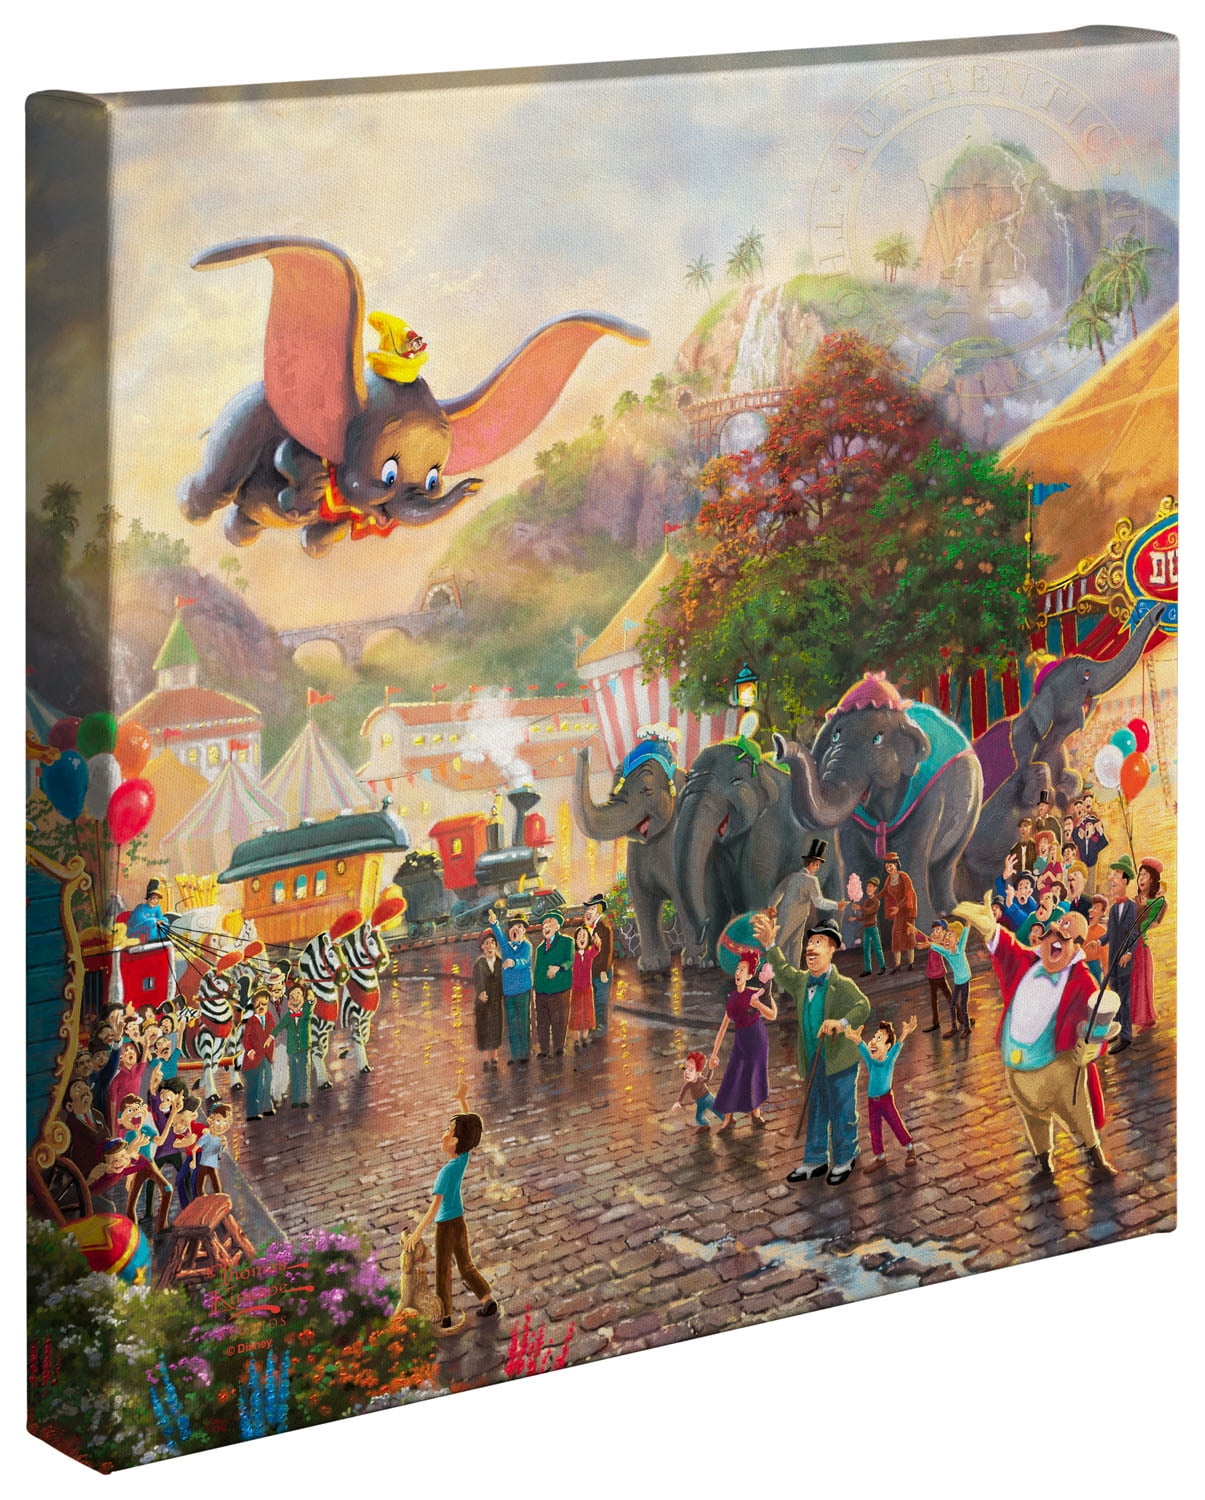 Thomas Kinkade Pinocchio 14 x 14 Gallery Wrapped Canvas Disney Wrap 